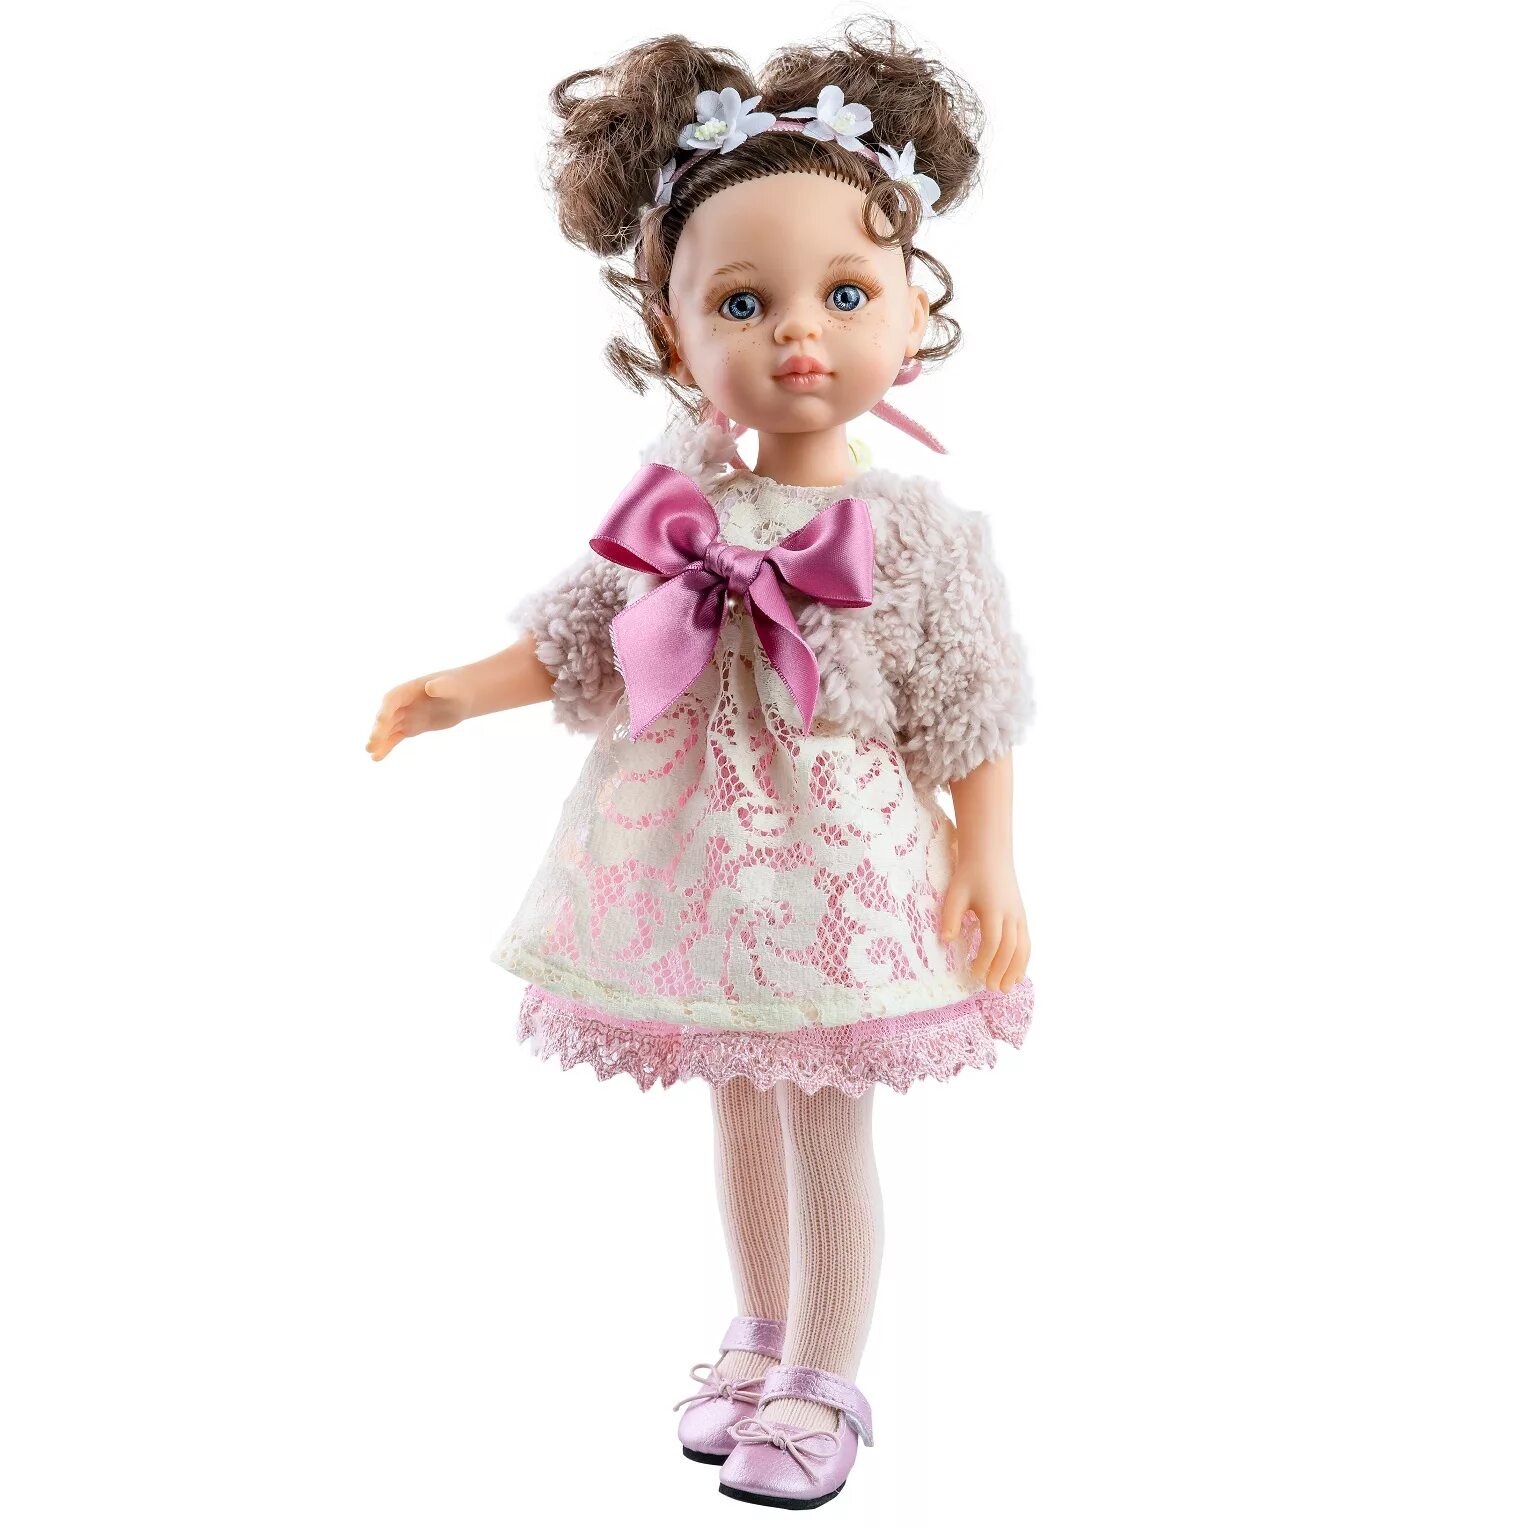 Кукла Паола Рейна. Кукла Паола Рейна Кэрол. Испанские куклы Паола Рейна. Кукла Паола Рейна 32. Большая куклы цена куклы